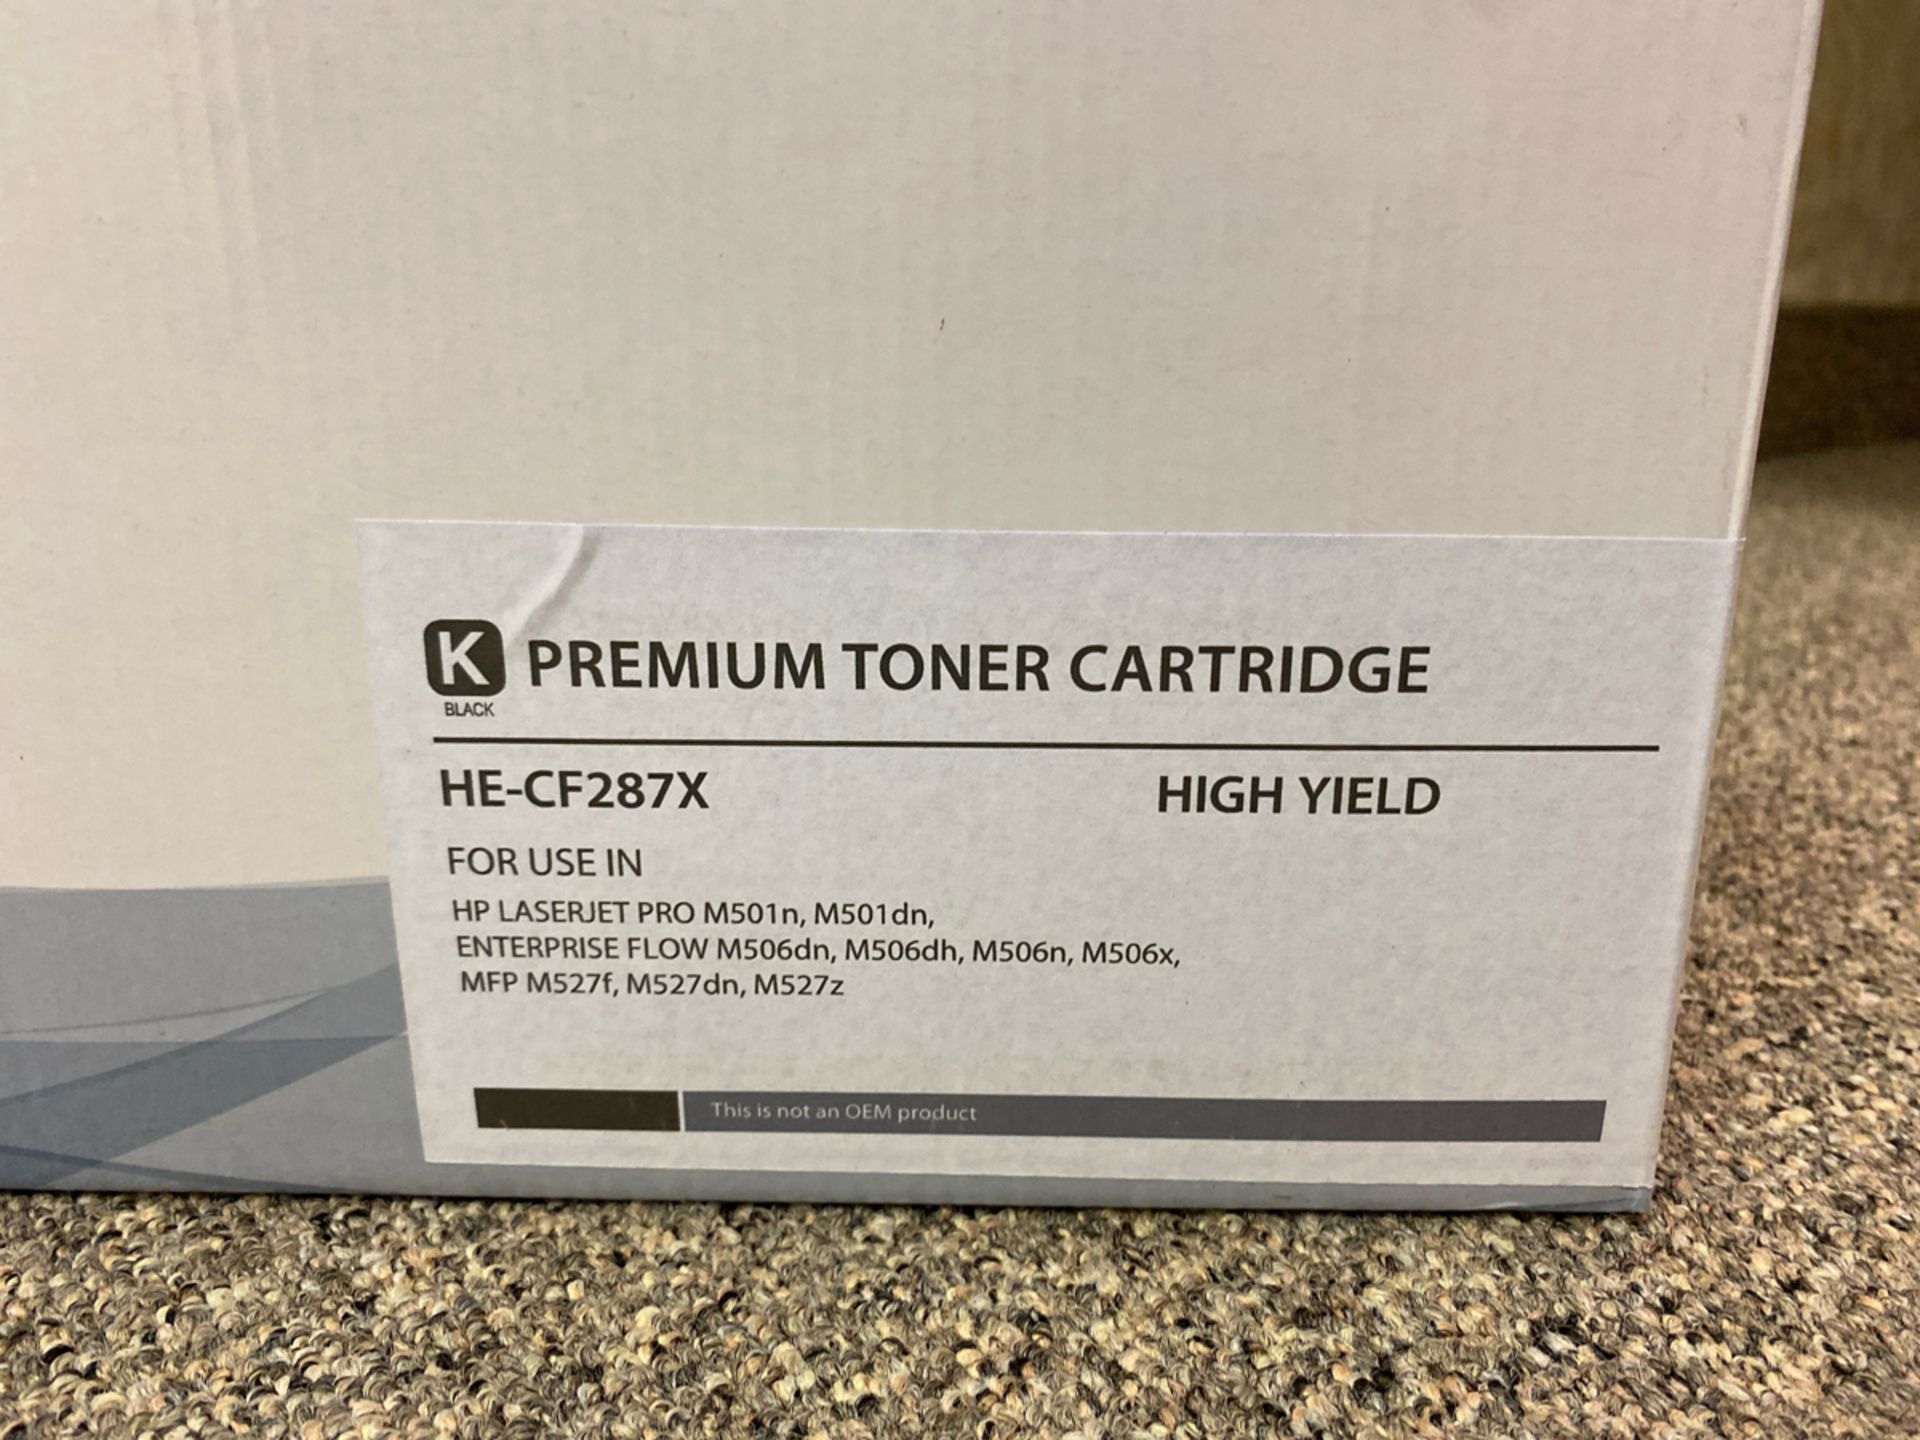 Premium Toner Cartridge HE-CF287X Black Toner Cartridge - Image 2 of 2